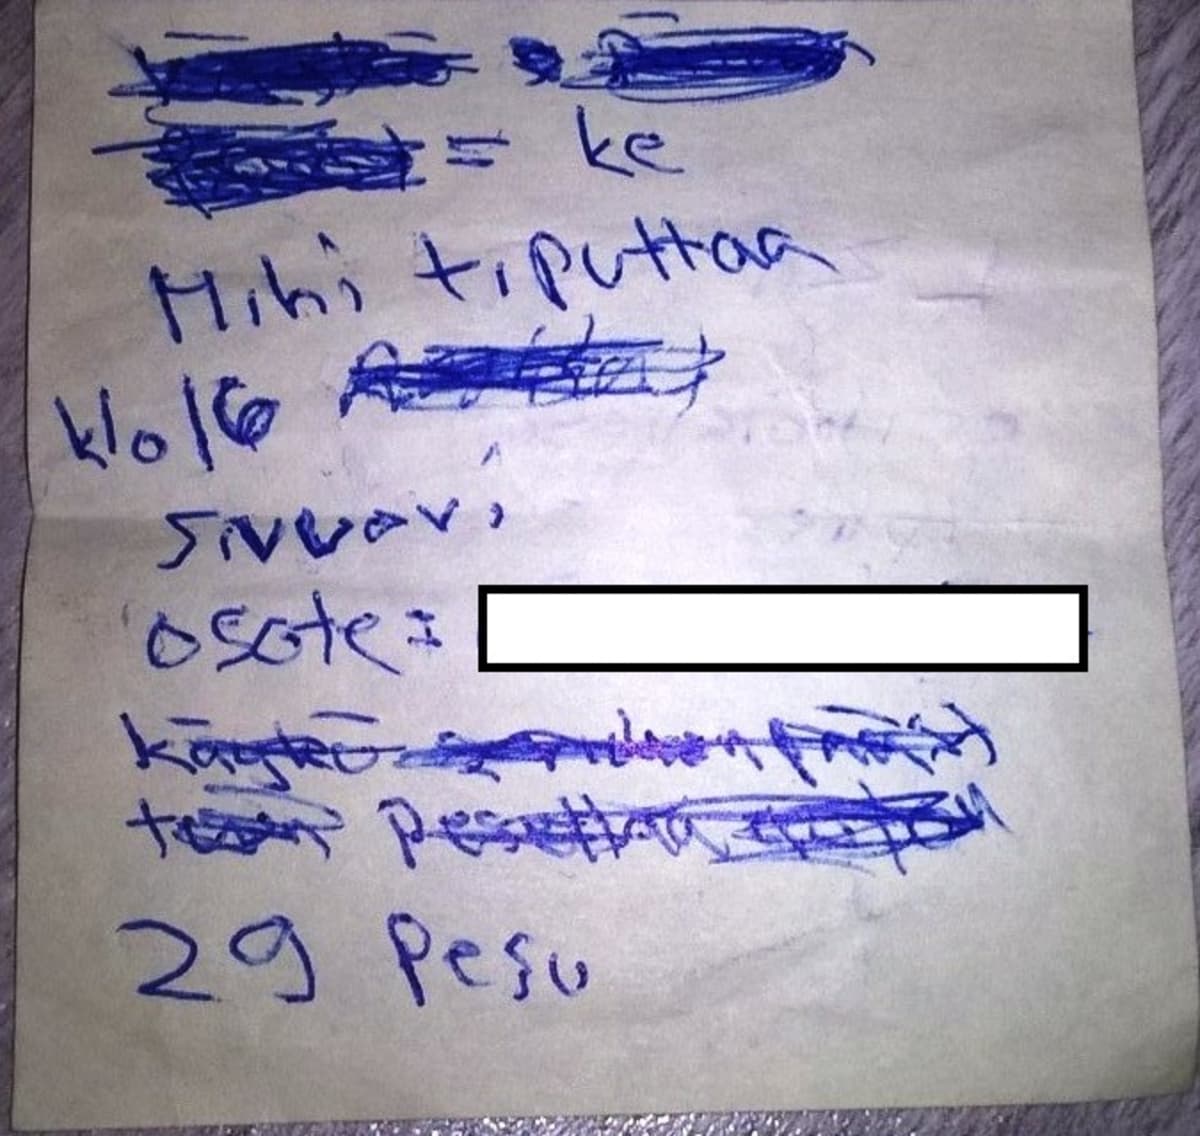 Poliisin löytämä paperilappu, josta selvisi huumeiden välitykseen liittyviä tietoja.